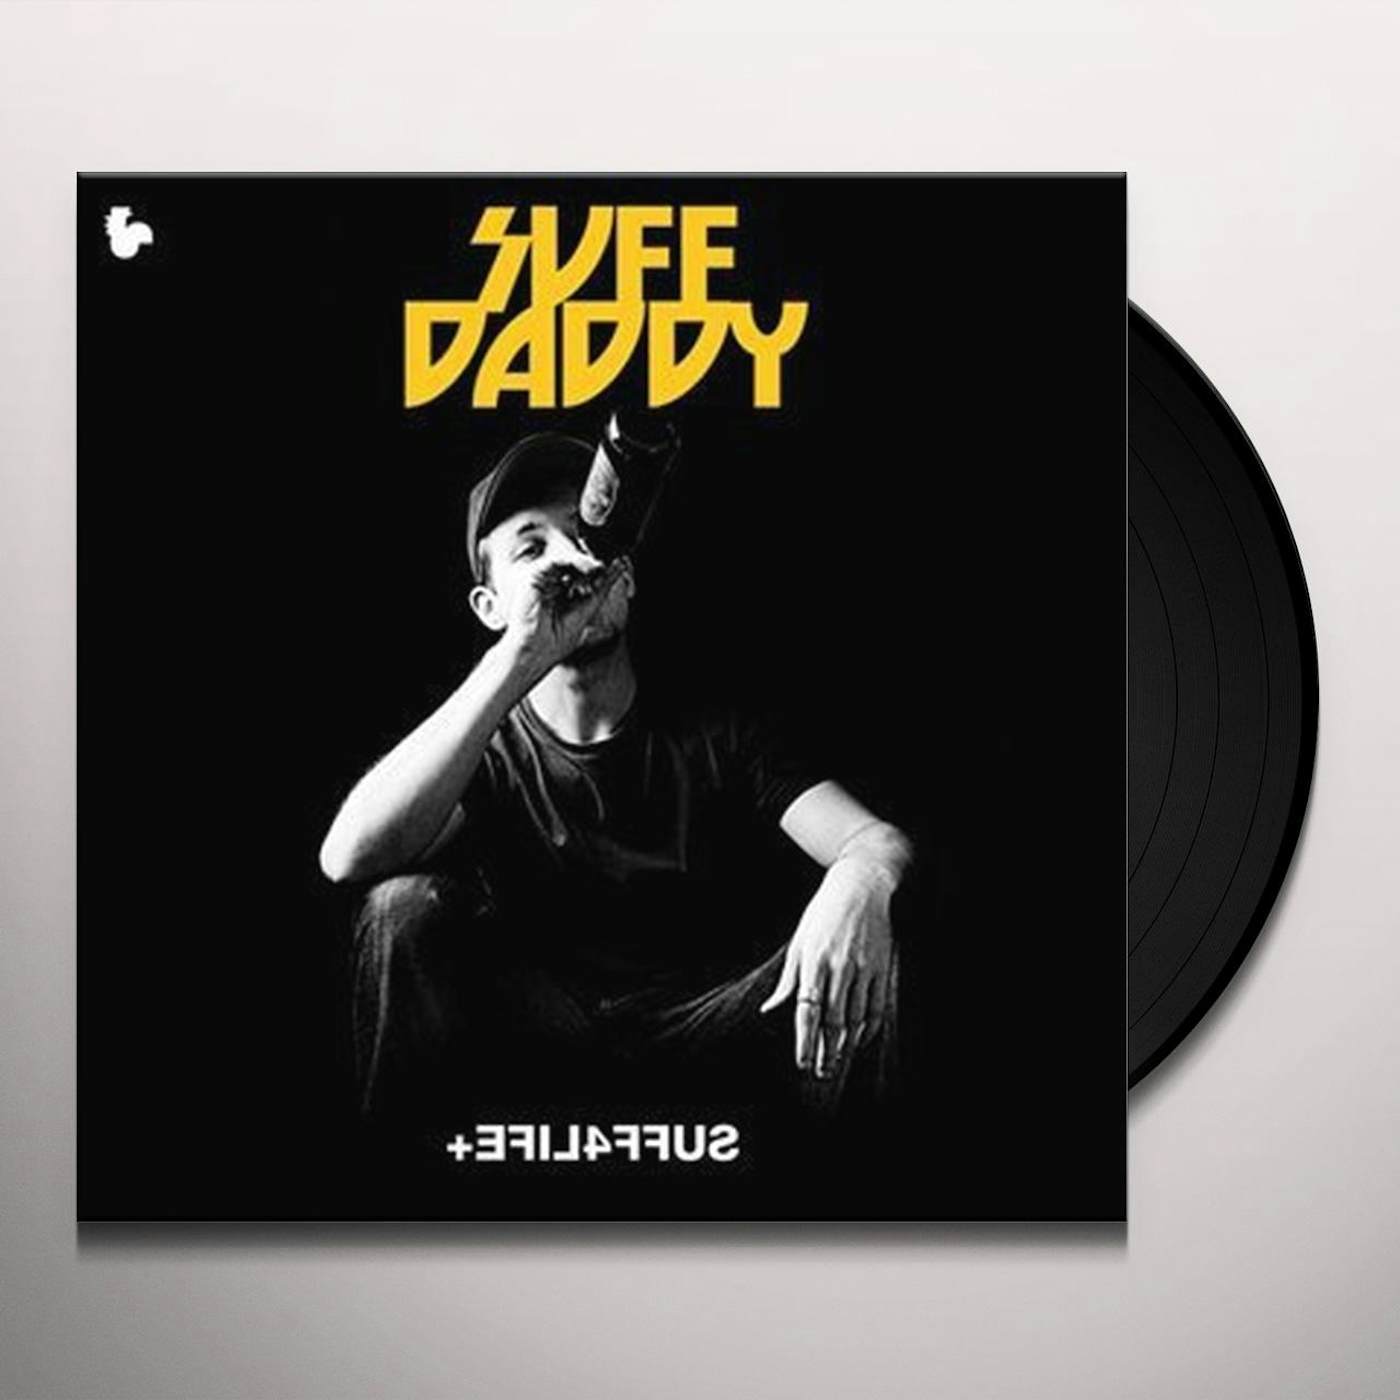 Suff Daddy EFIL4FFUS Vinyl Record